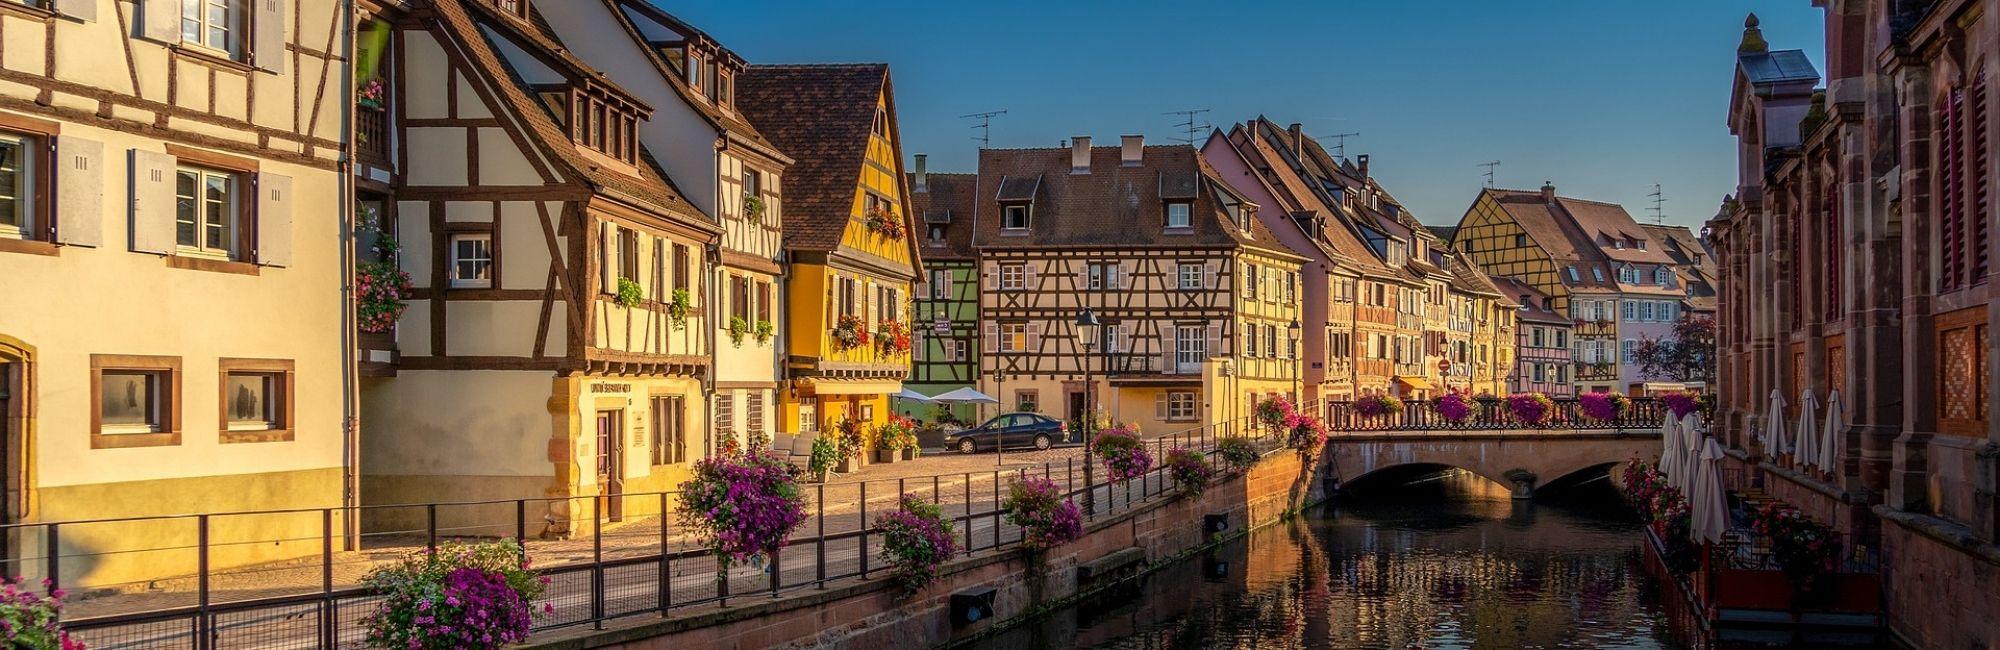 Alsace Colmar Pixabay